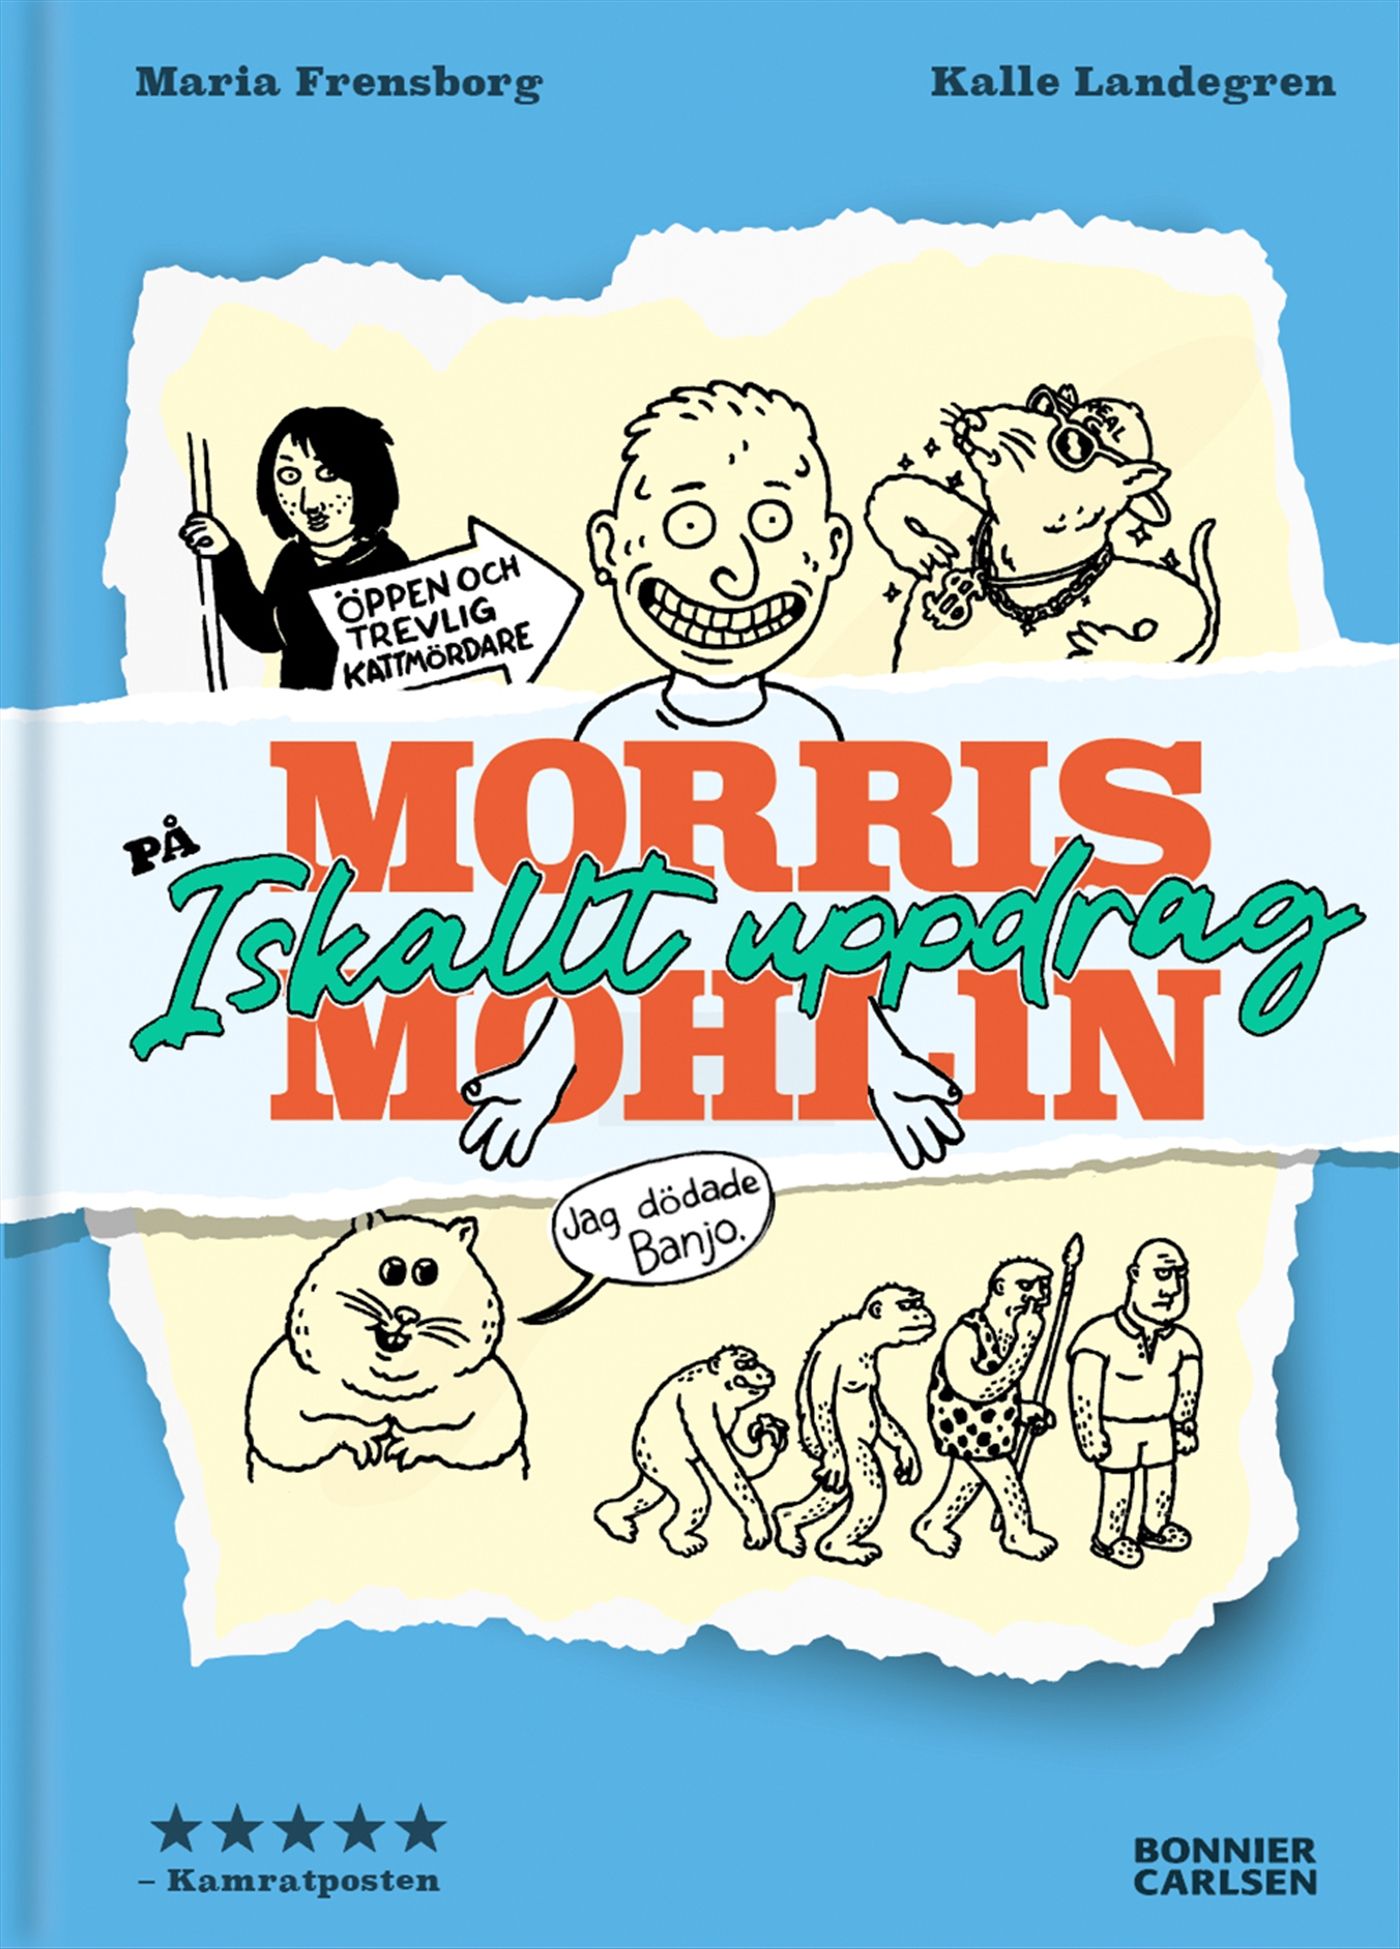 Morris Mohlin på iskallt uppdrag, e-bok av Maria Frensborg